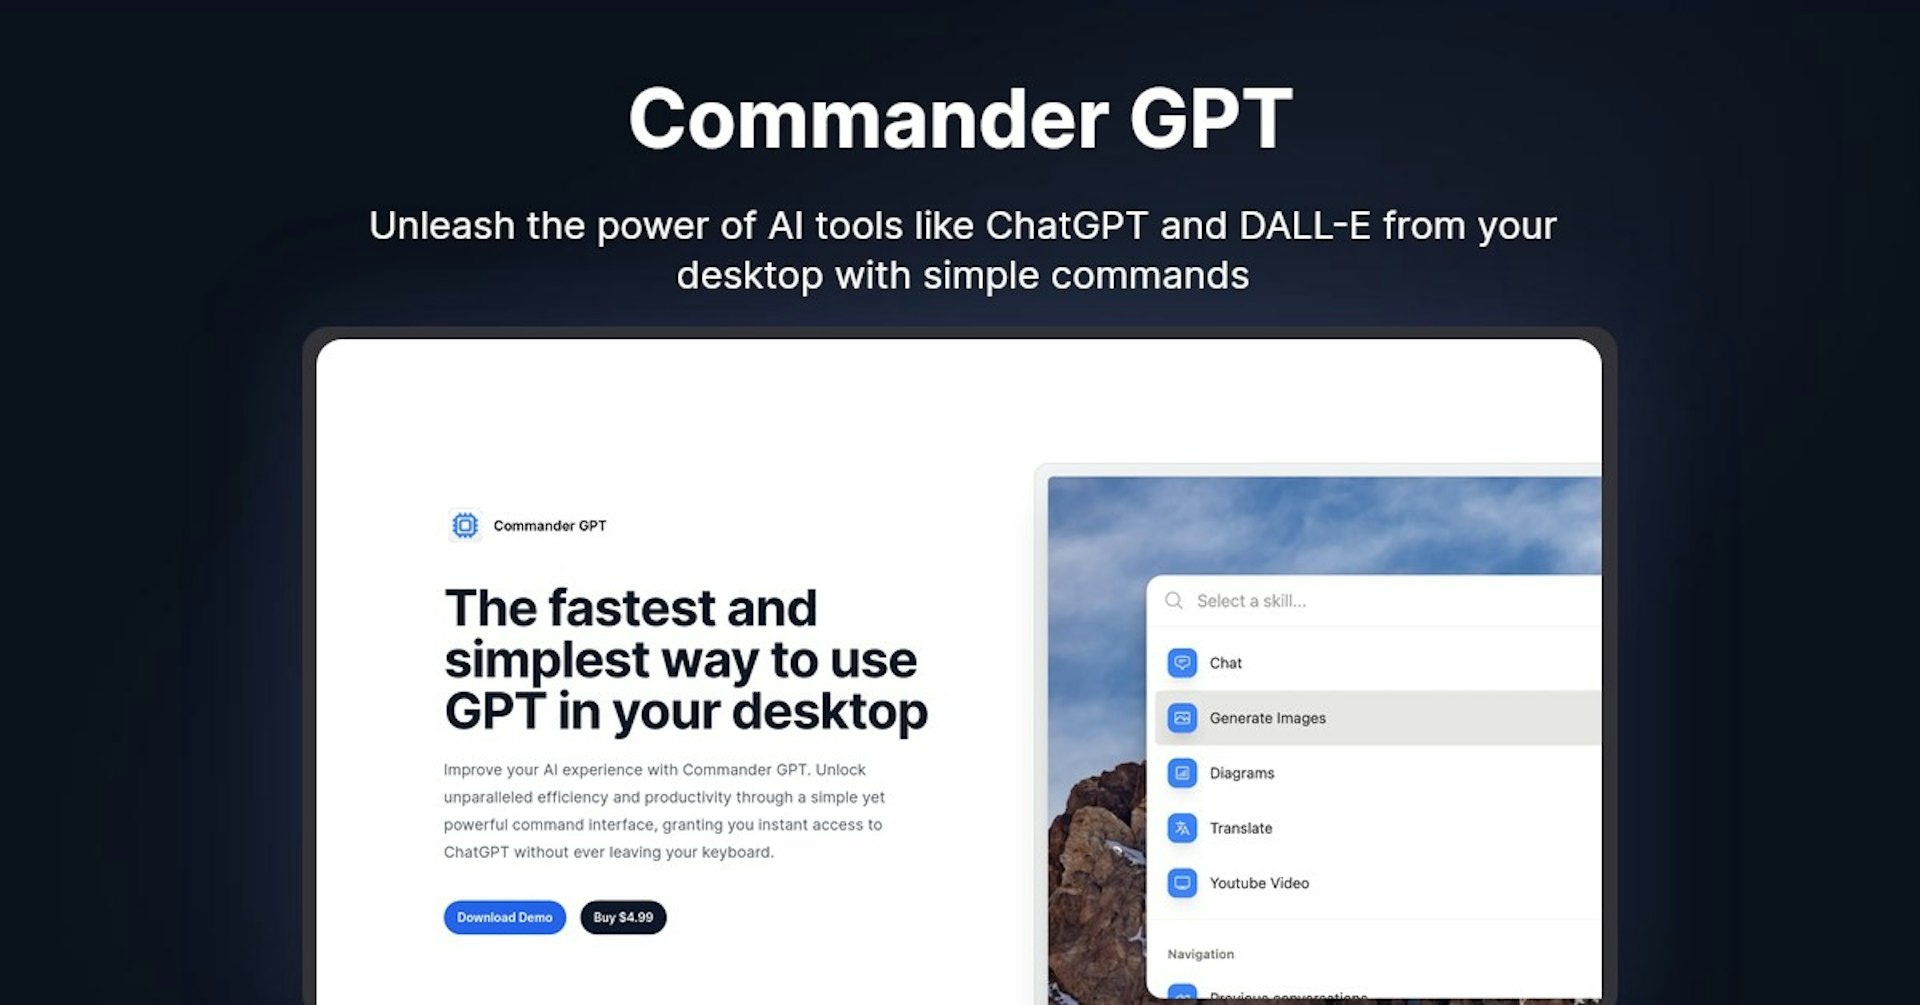 Commander GPT